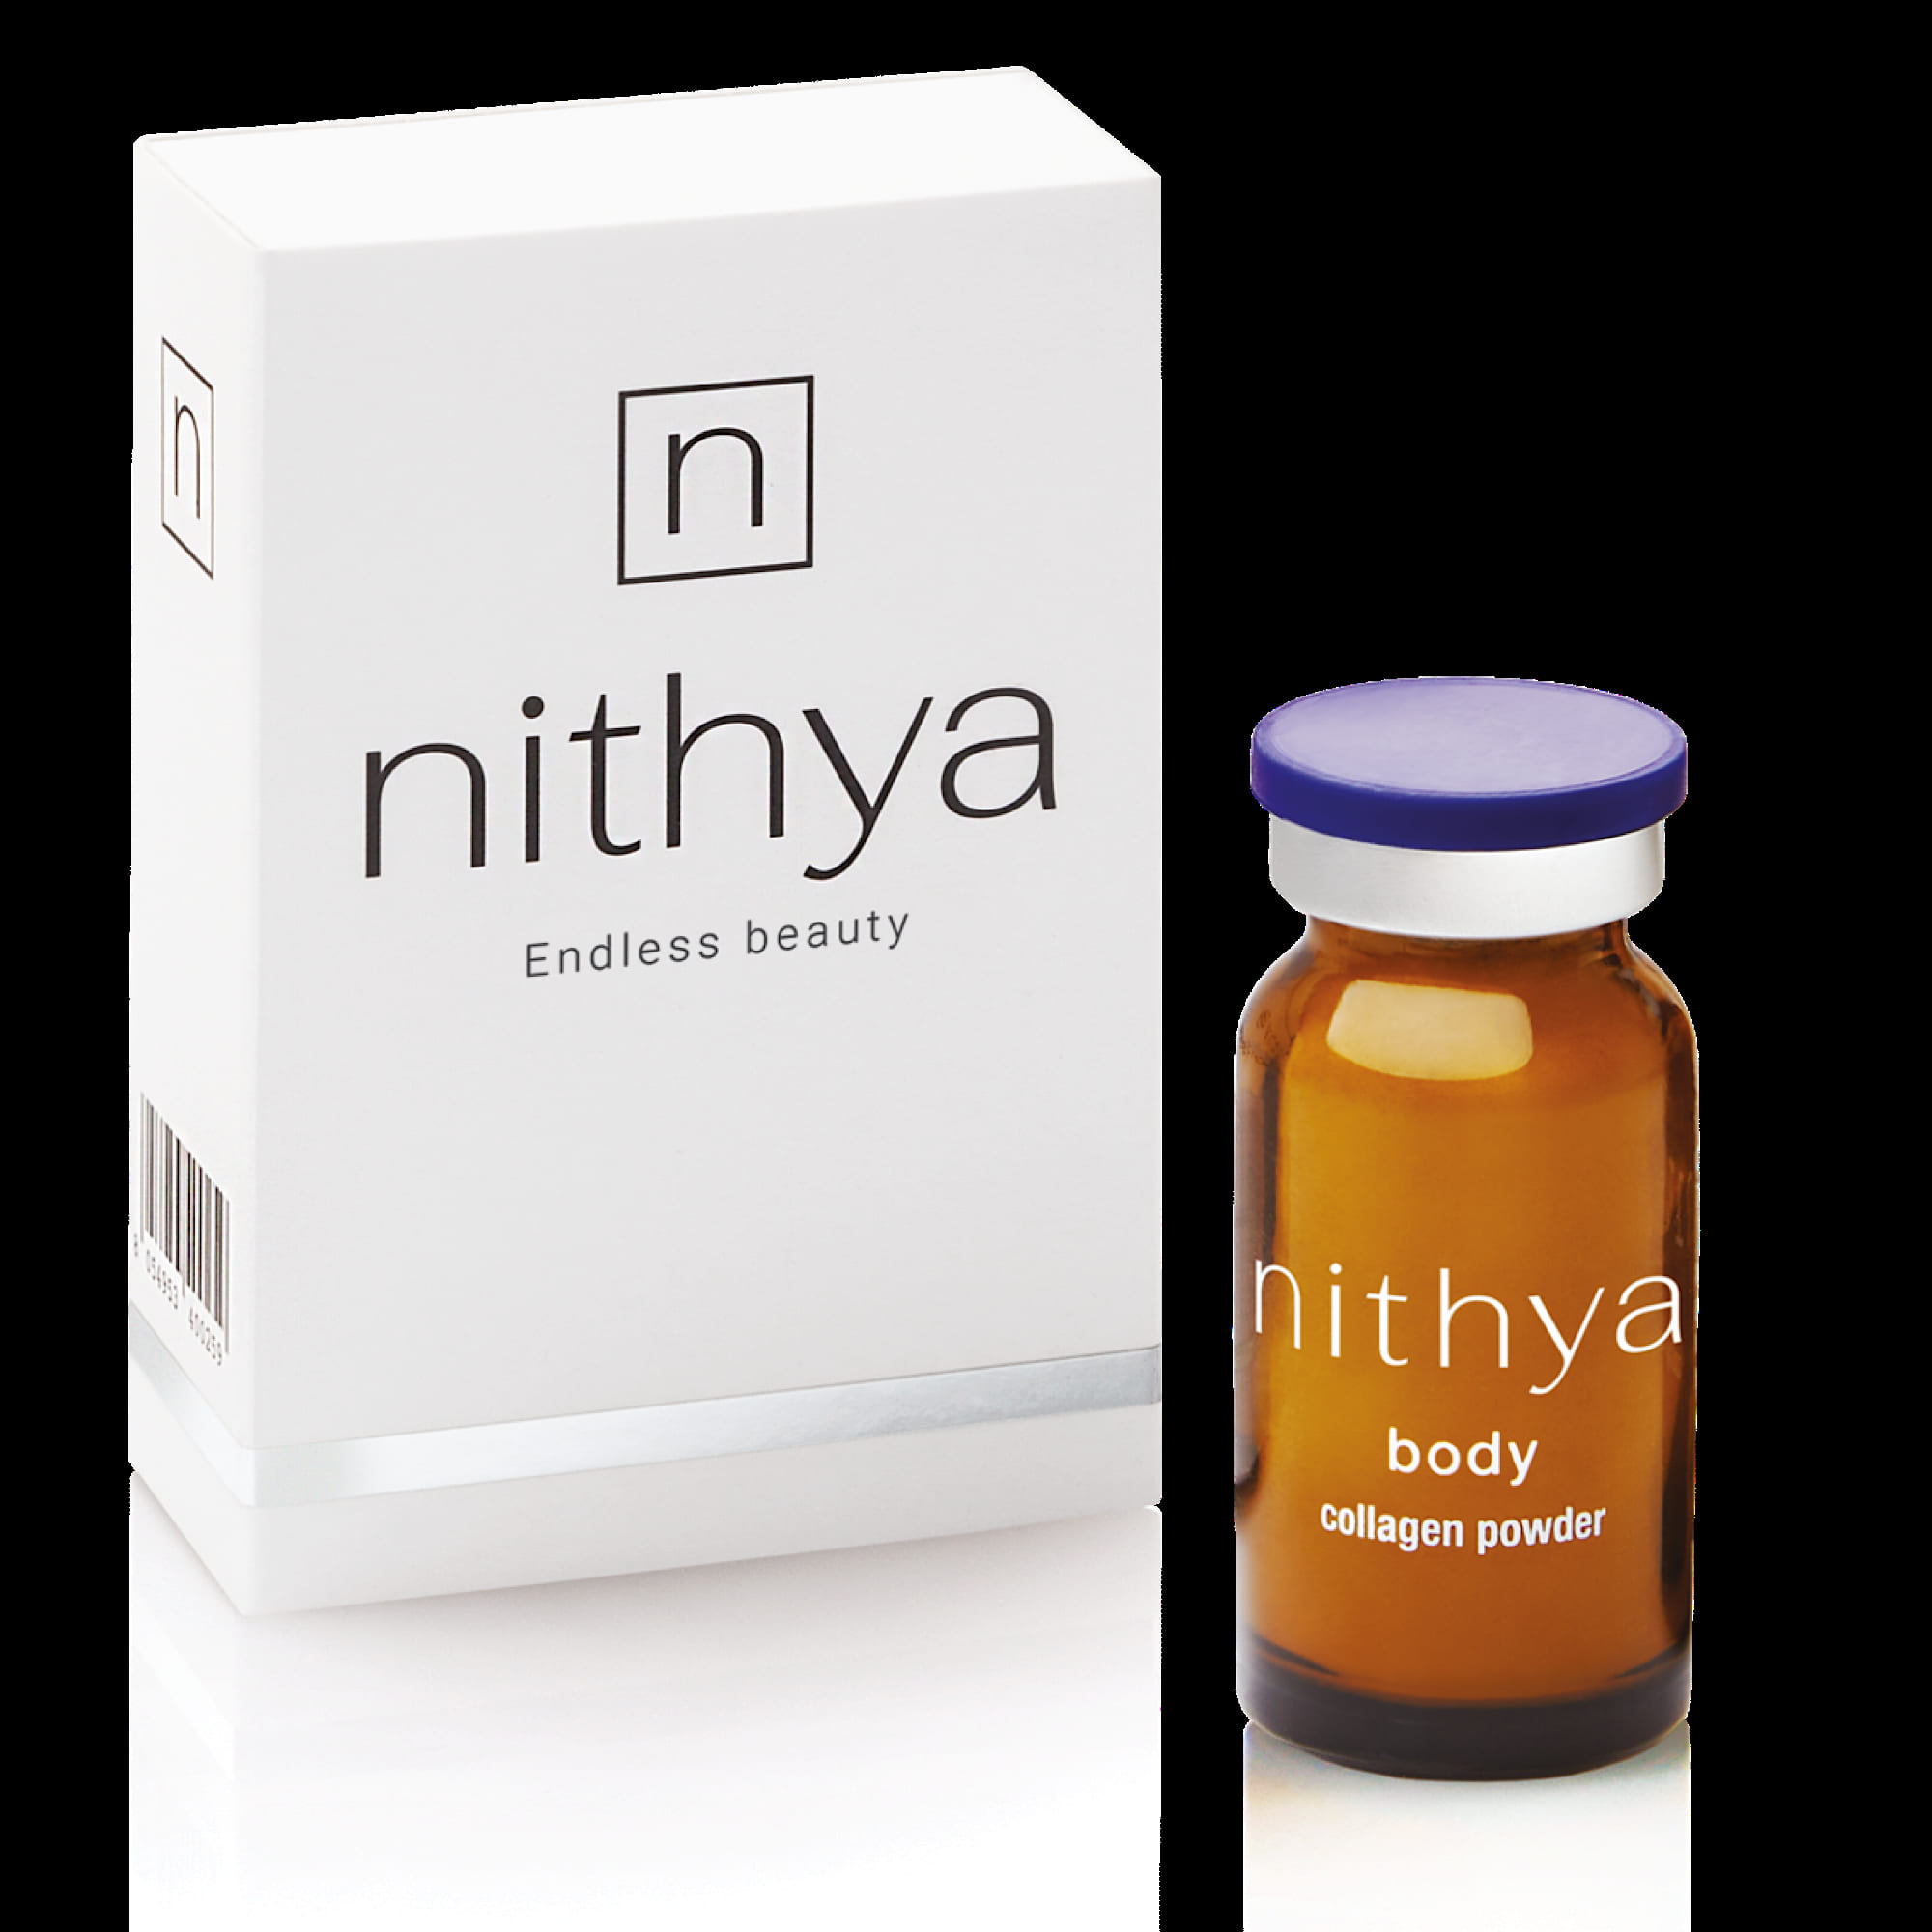 Нития стимулейт. Nithya. Nithya Классик и s-line. Nithya stimulate (Нития стимулейт) производитель. Нития отзывы пациентов фото.